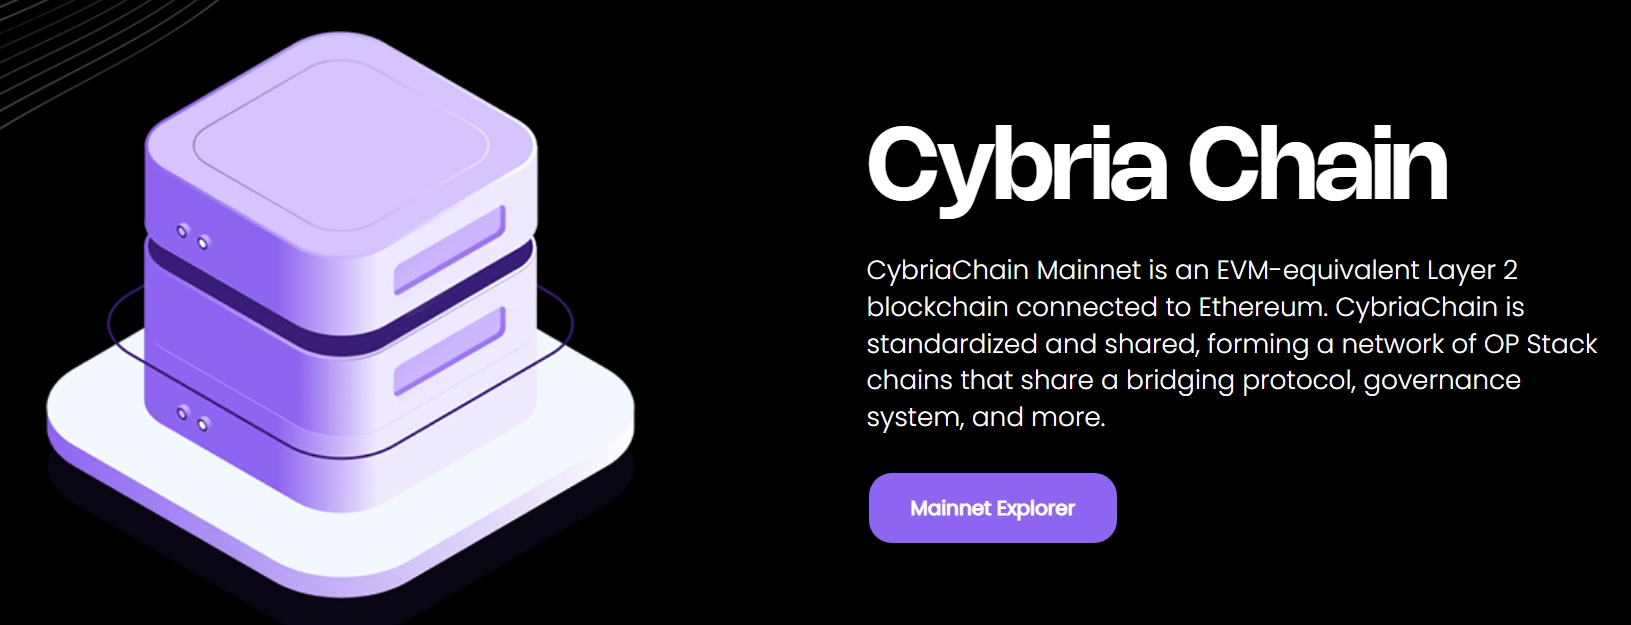 Cybria kết hợp AI vào kiến trúc layer 2 OP stack